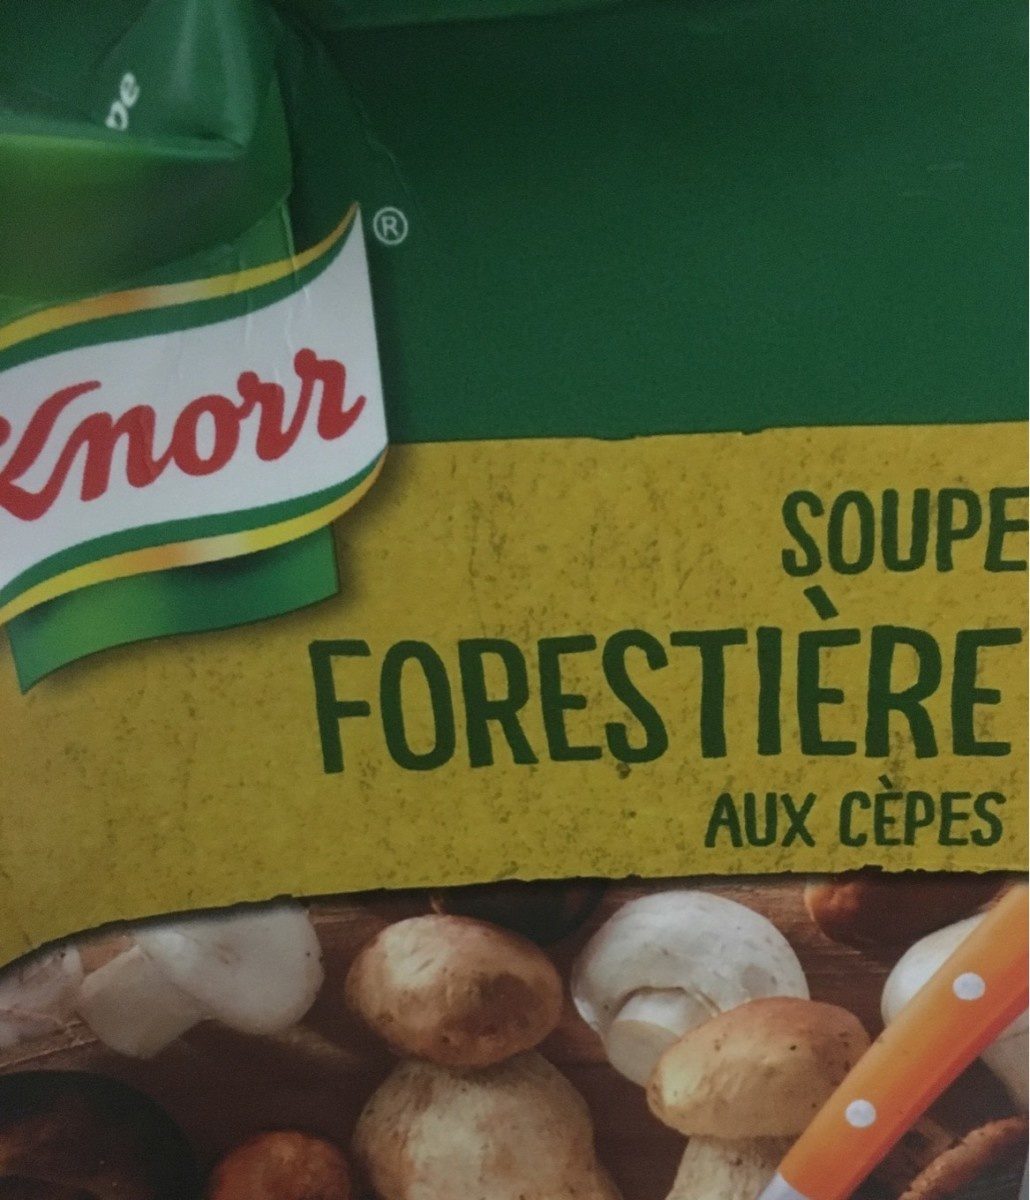 Soupe forestiere aux cepes - Prodotto - fr